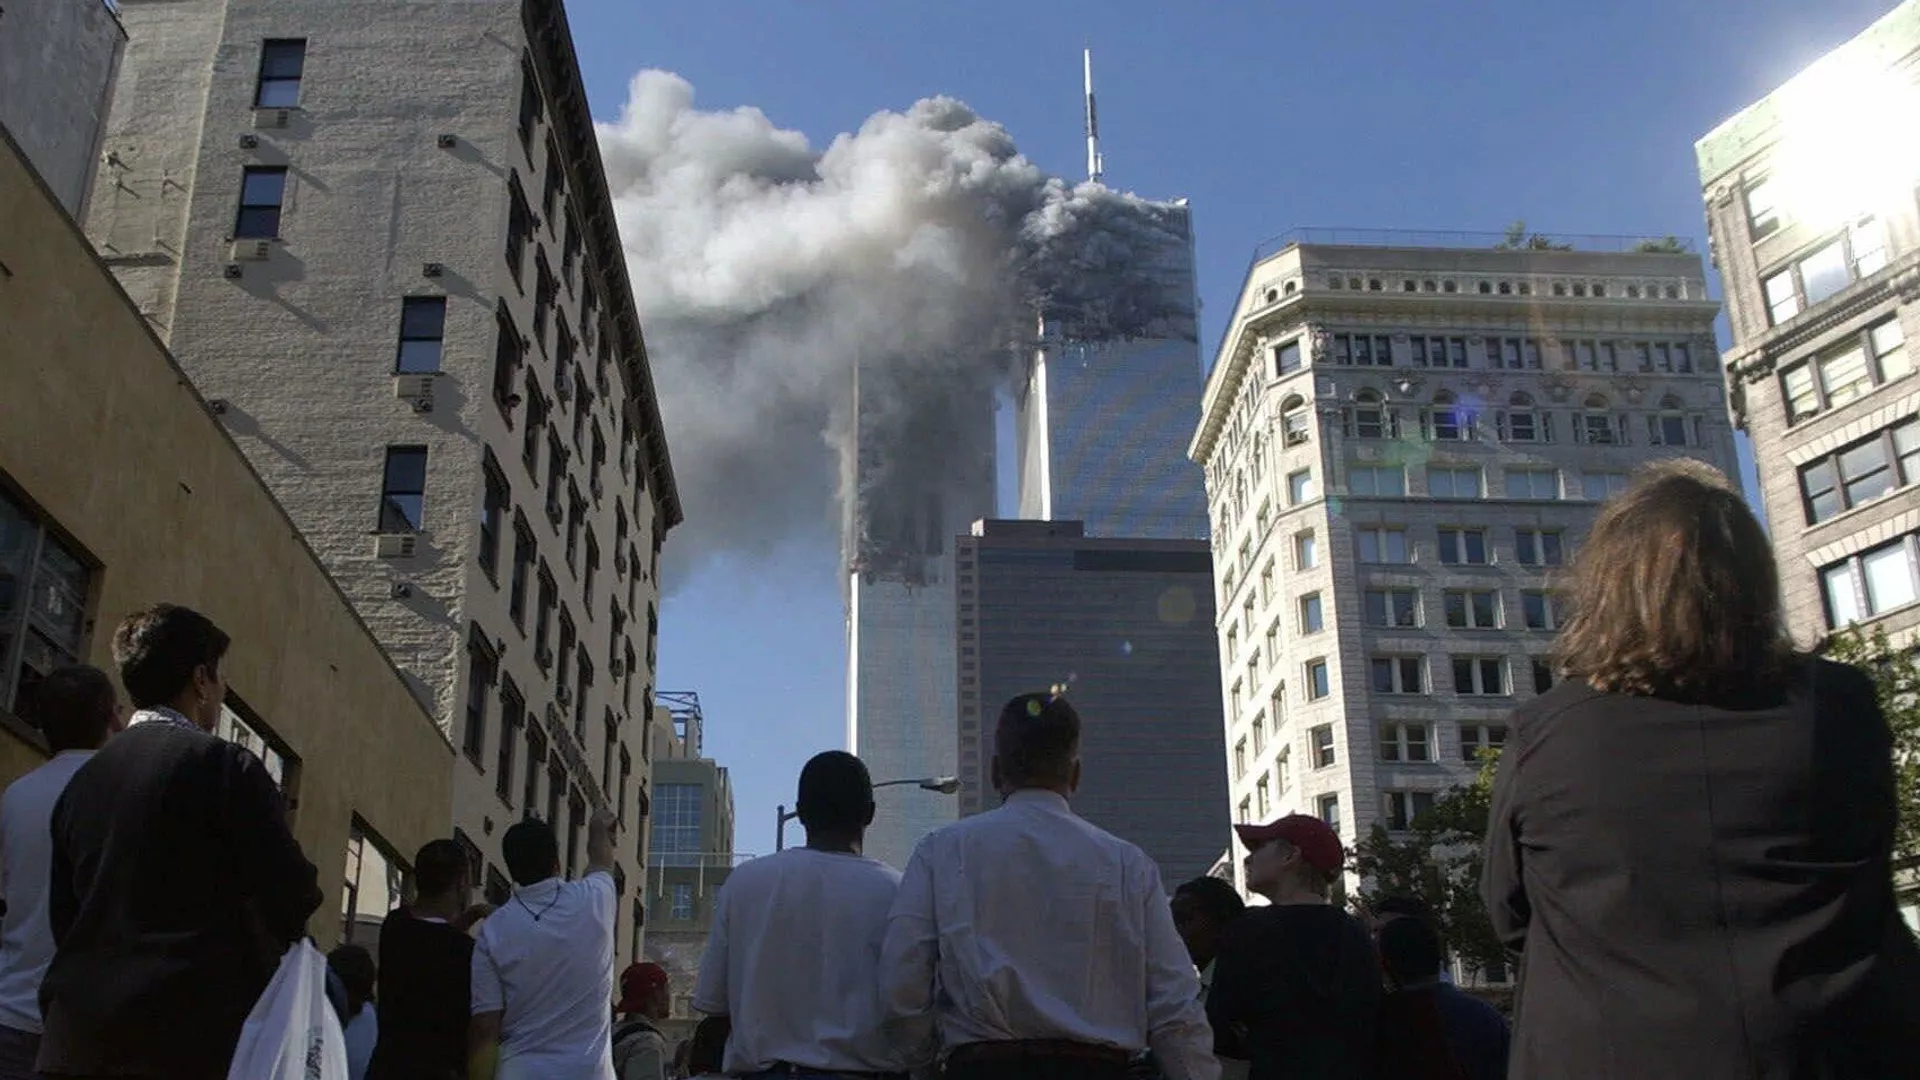 7 августа 2001 год. Теракты 11 сентября 2001 года. Всемирный торговый центр в Нью-Йорке 11 сентября 2001 года. 11 Сентября 2001 башни Пентагон.